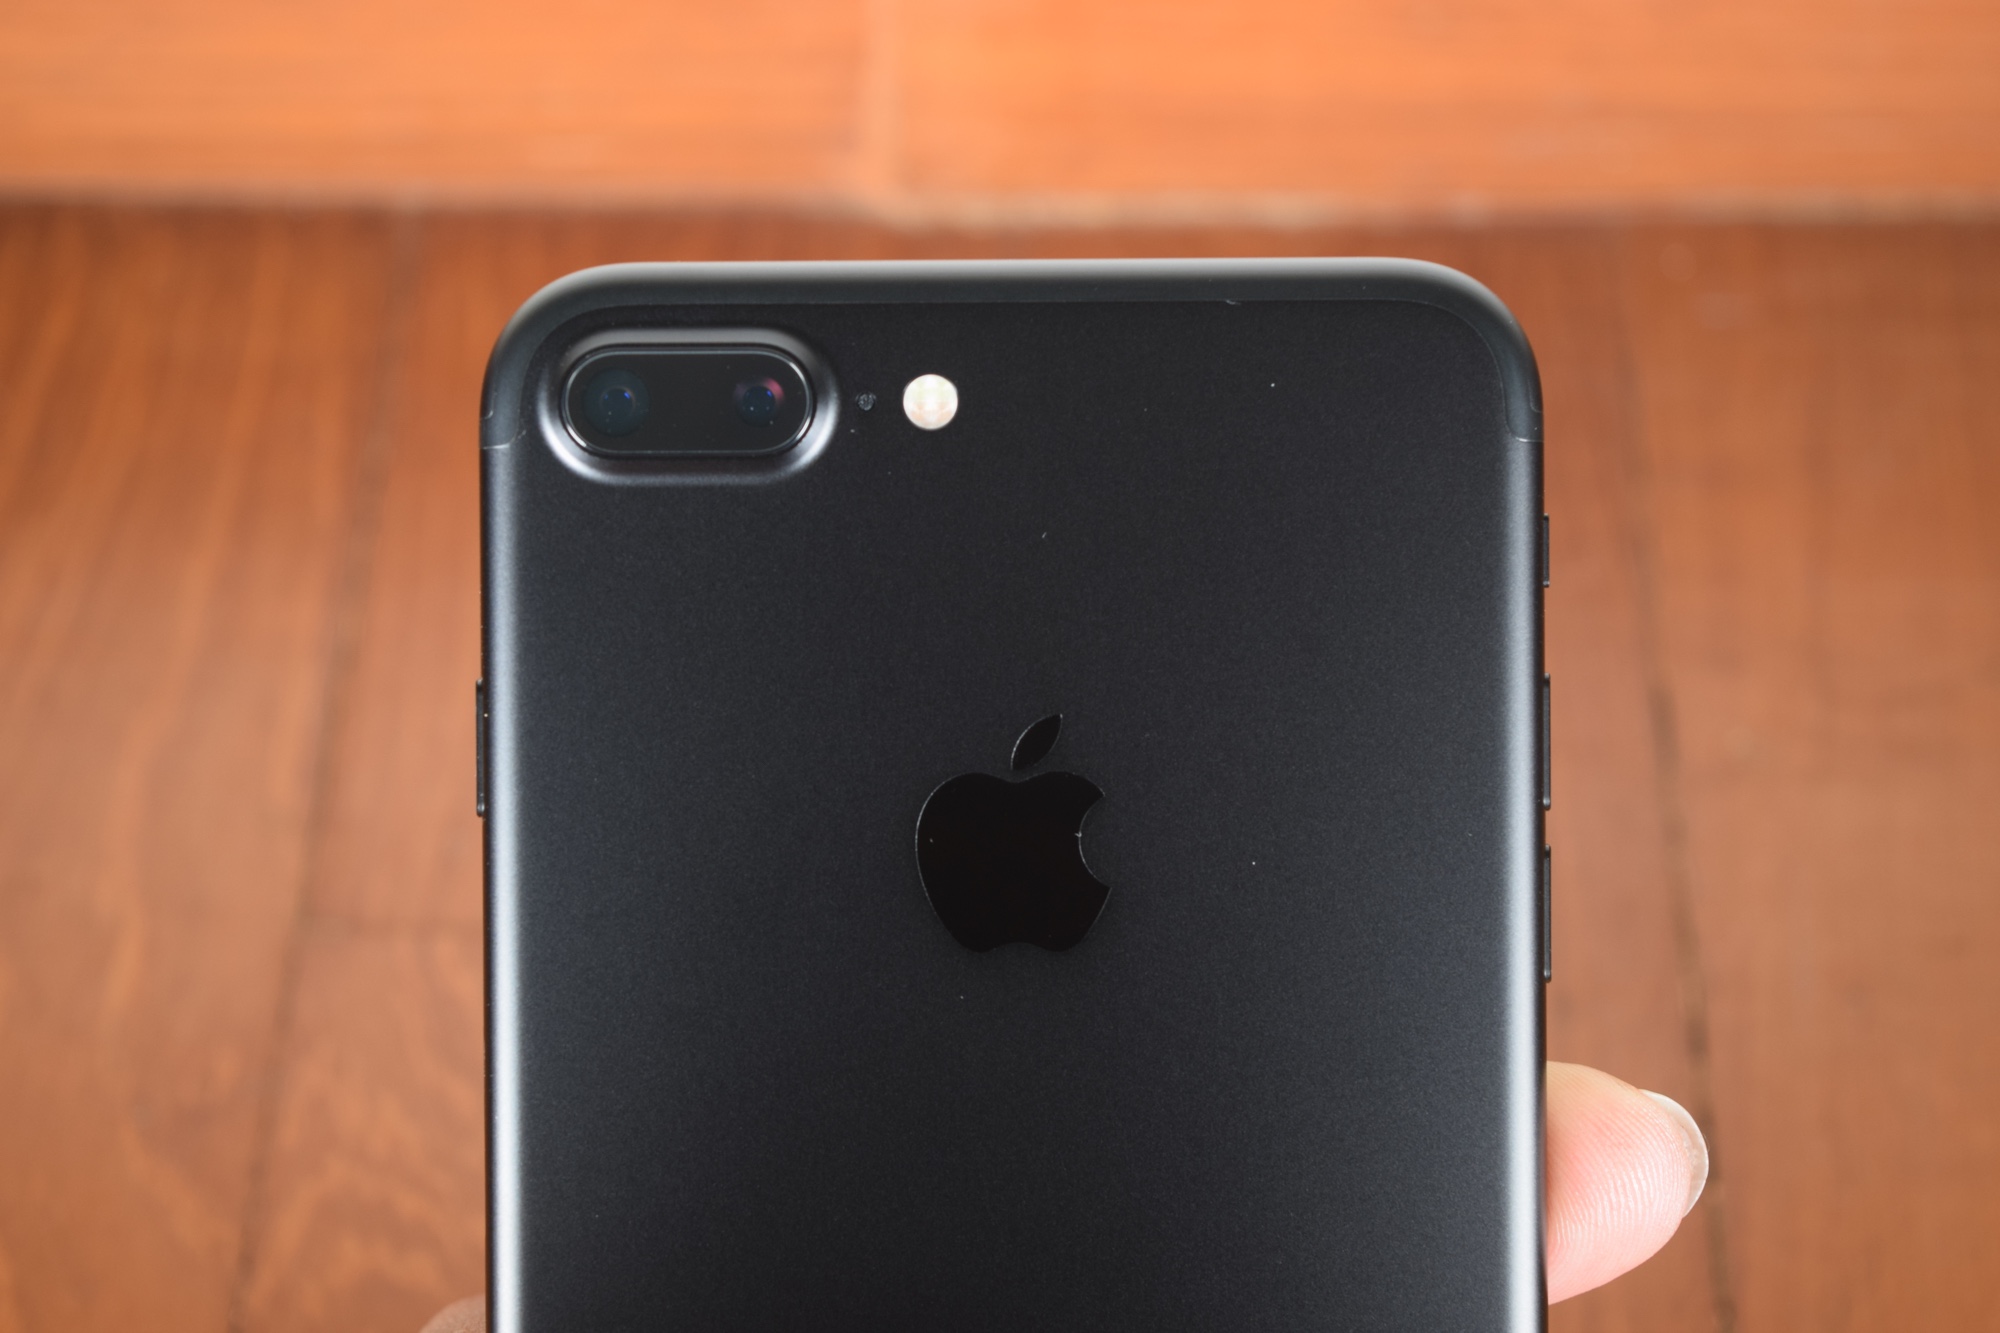 iPhone 7 Plus - Back - Camera - rear facing camera